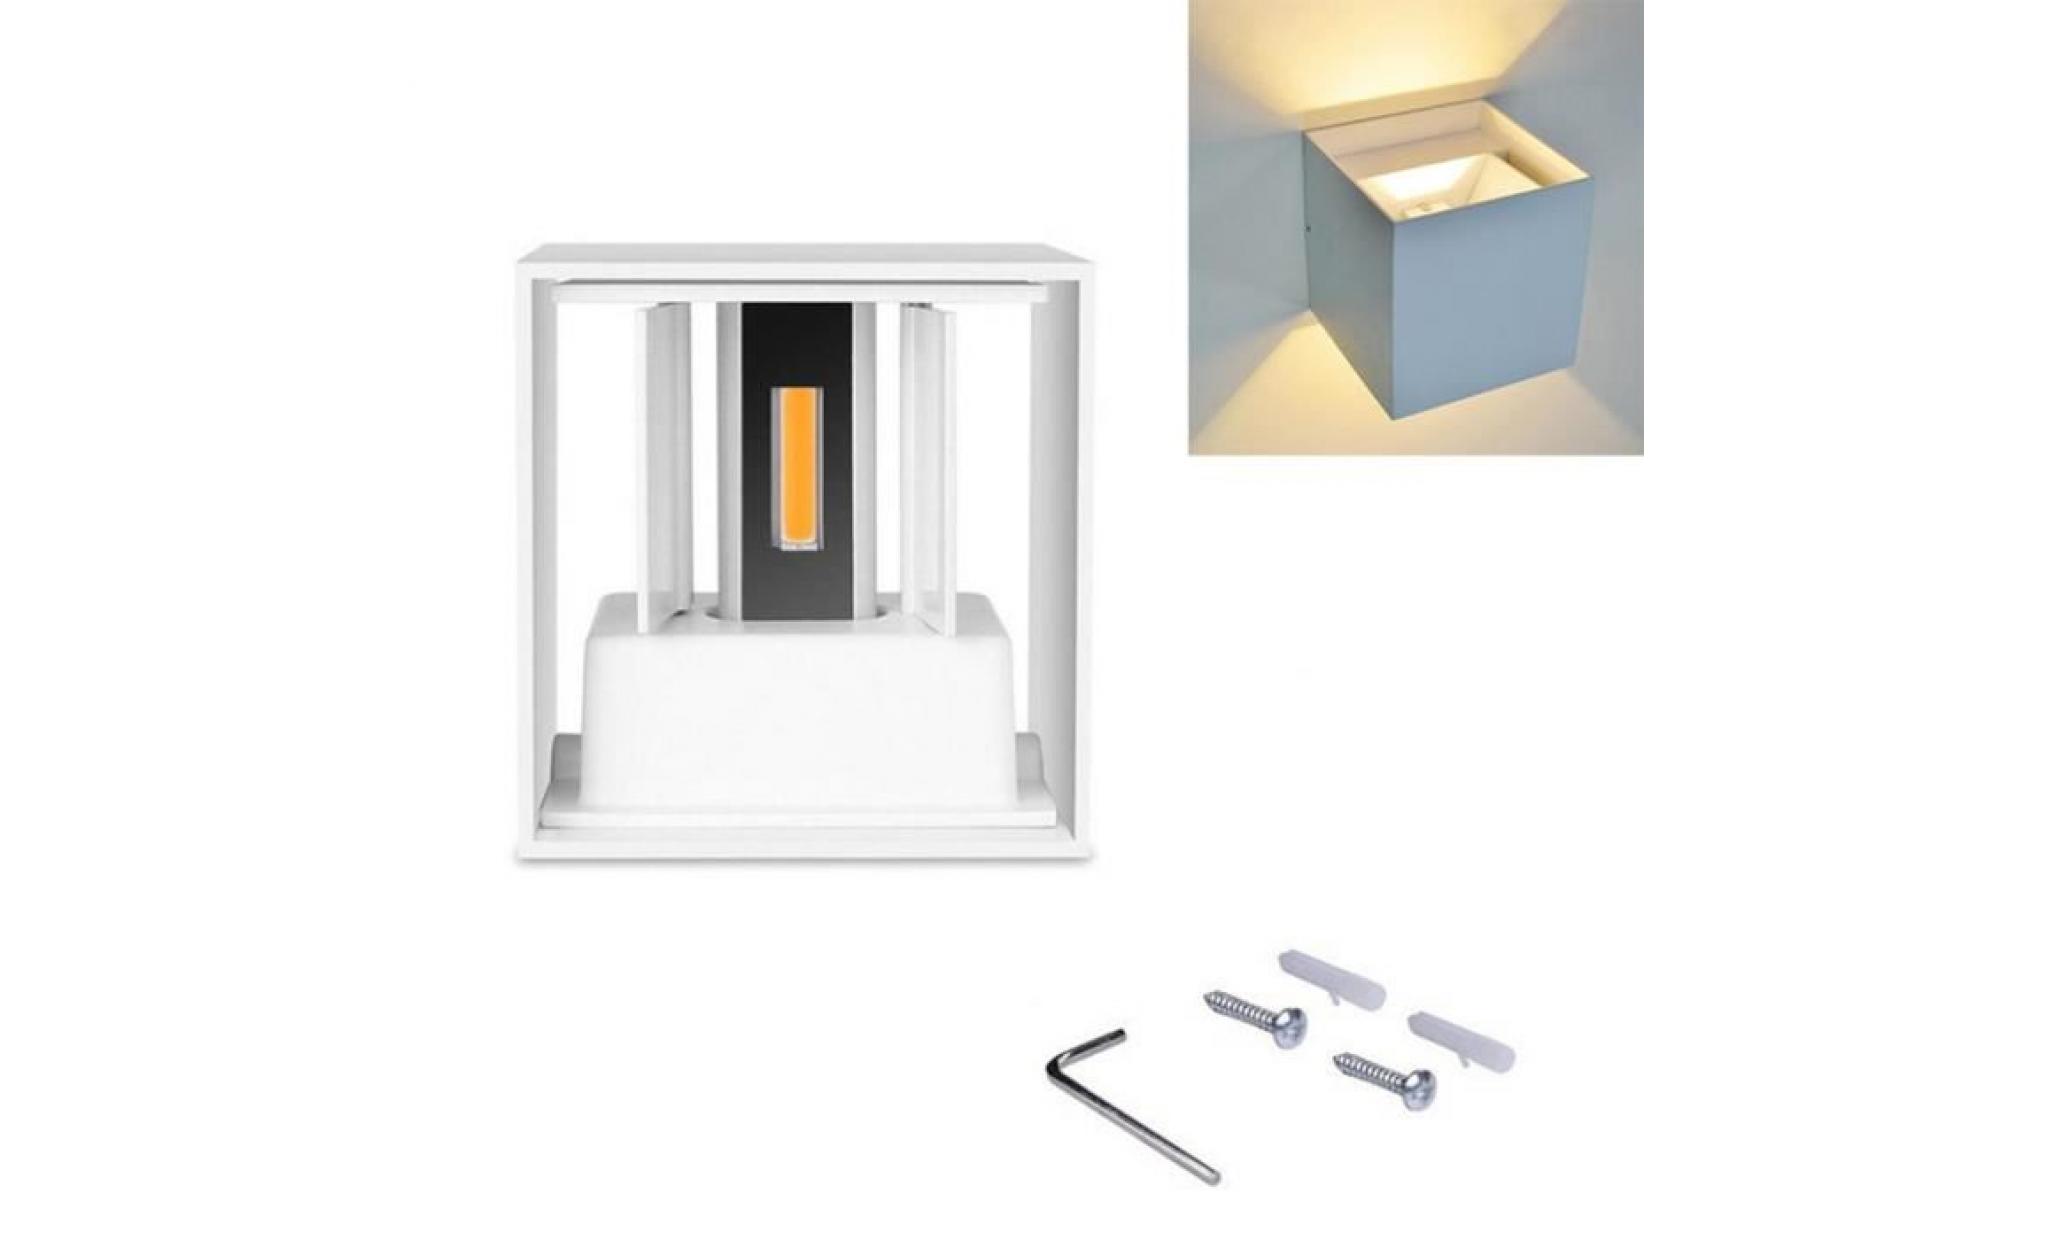 Étanche cube aluminium 7w led applique moderne lumière home garden décoration blanc cas white light *